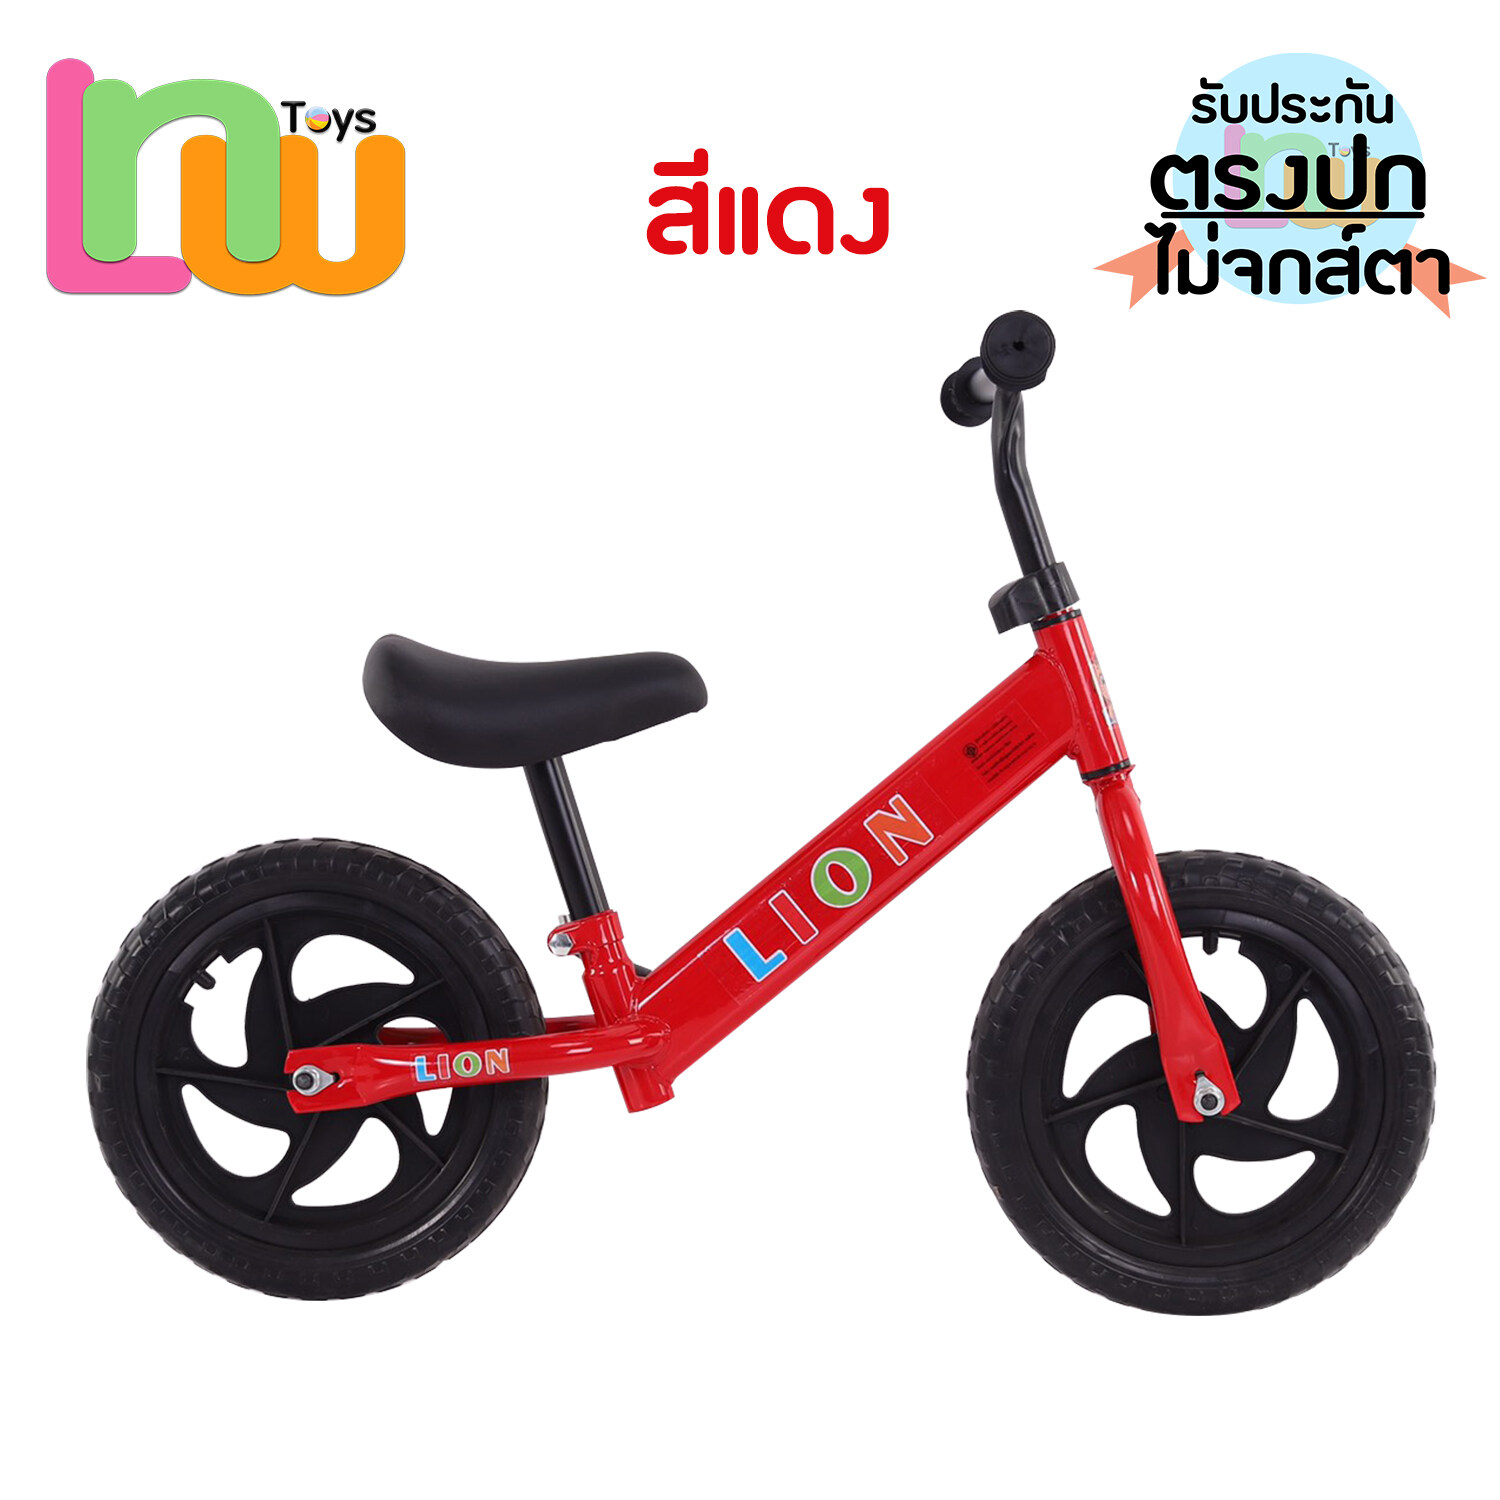 ถูกที่สุด! จักรยานทรงตัว จักรยานฝึกการทรงตัว2ล้อ สำหรับเด็ก จักรยานบาลานส์ ตรงปก ไม่จกส์ตา ส่งจากไทย LNB-3007